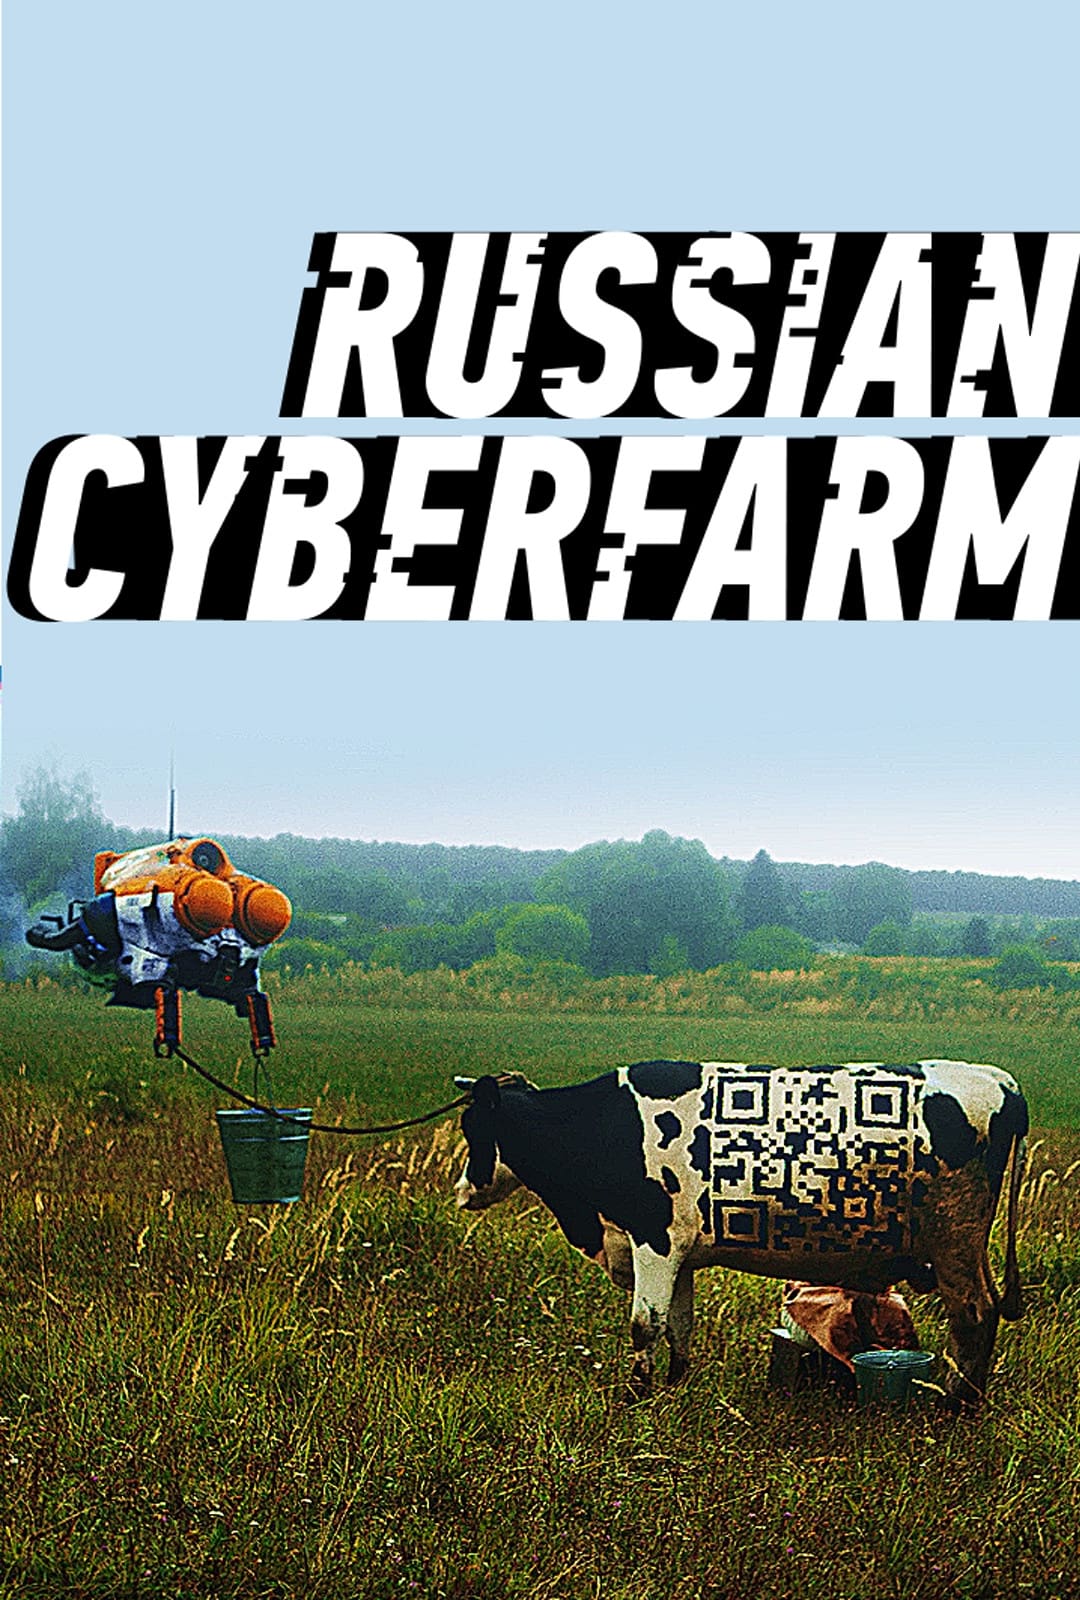 Russian Cyberpunk Farm